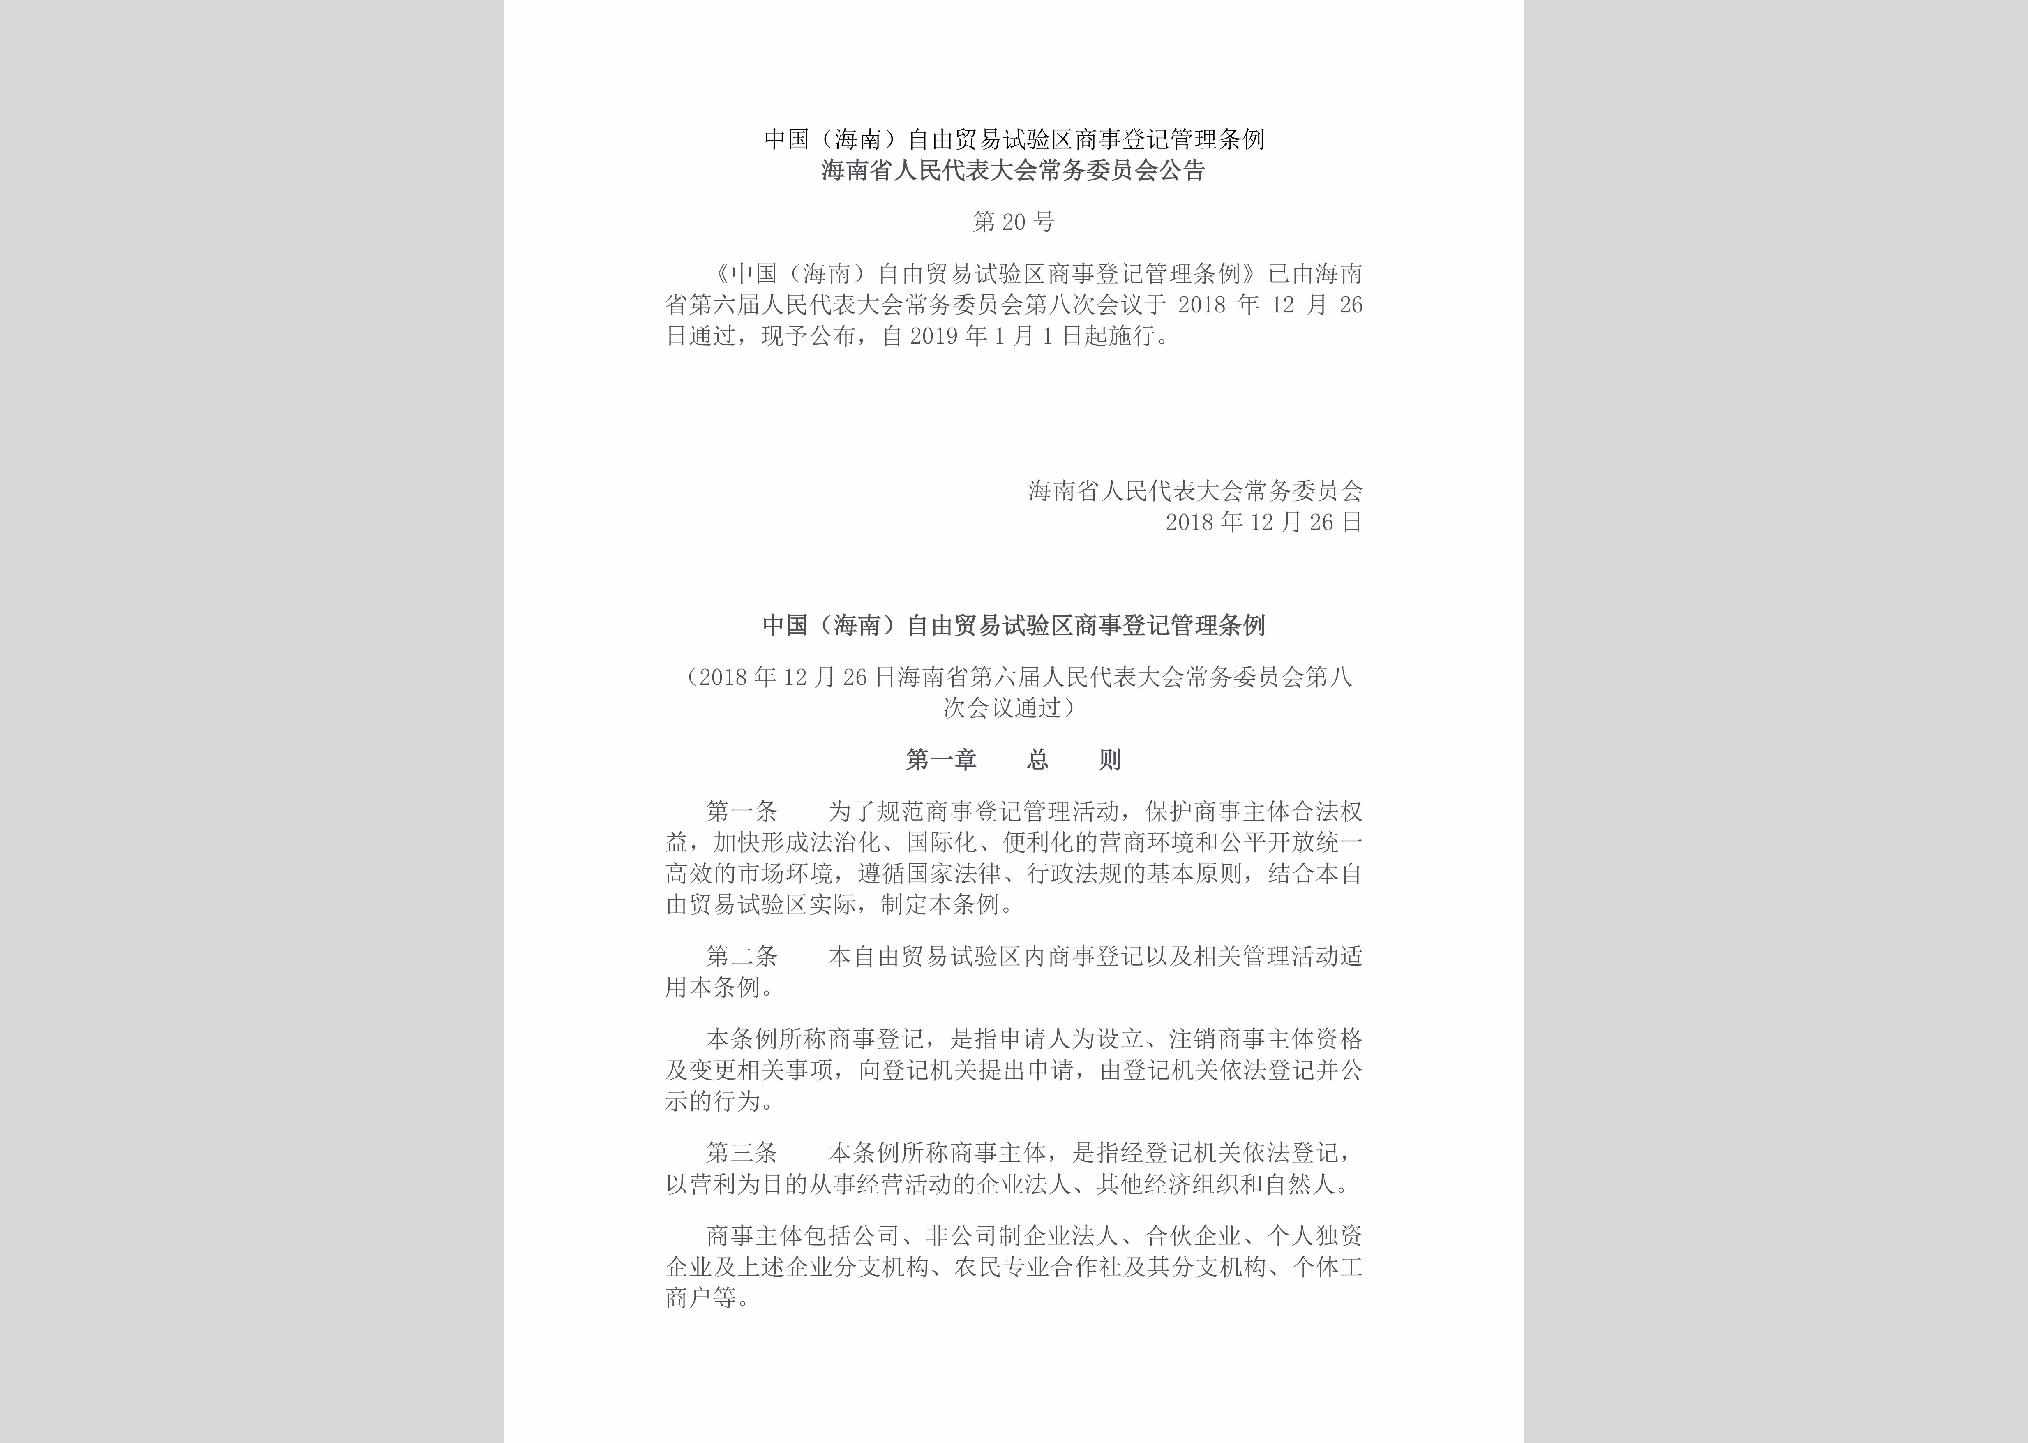 海南省人民代表大会常务委员会公告第20号：中国（海南）自由贸易试验区商事登记管理条例